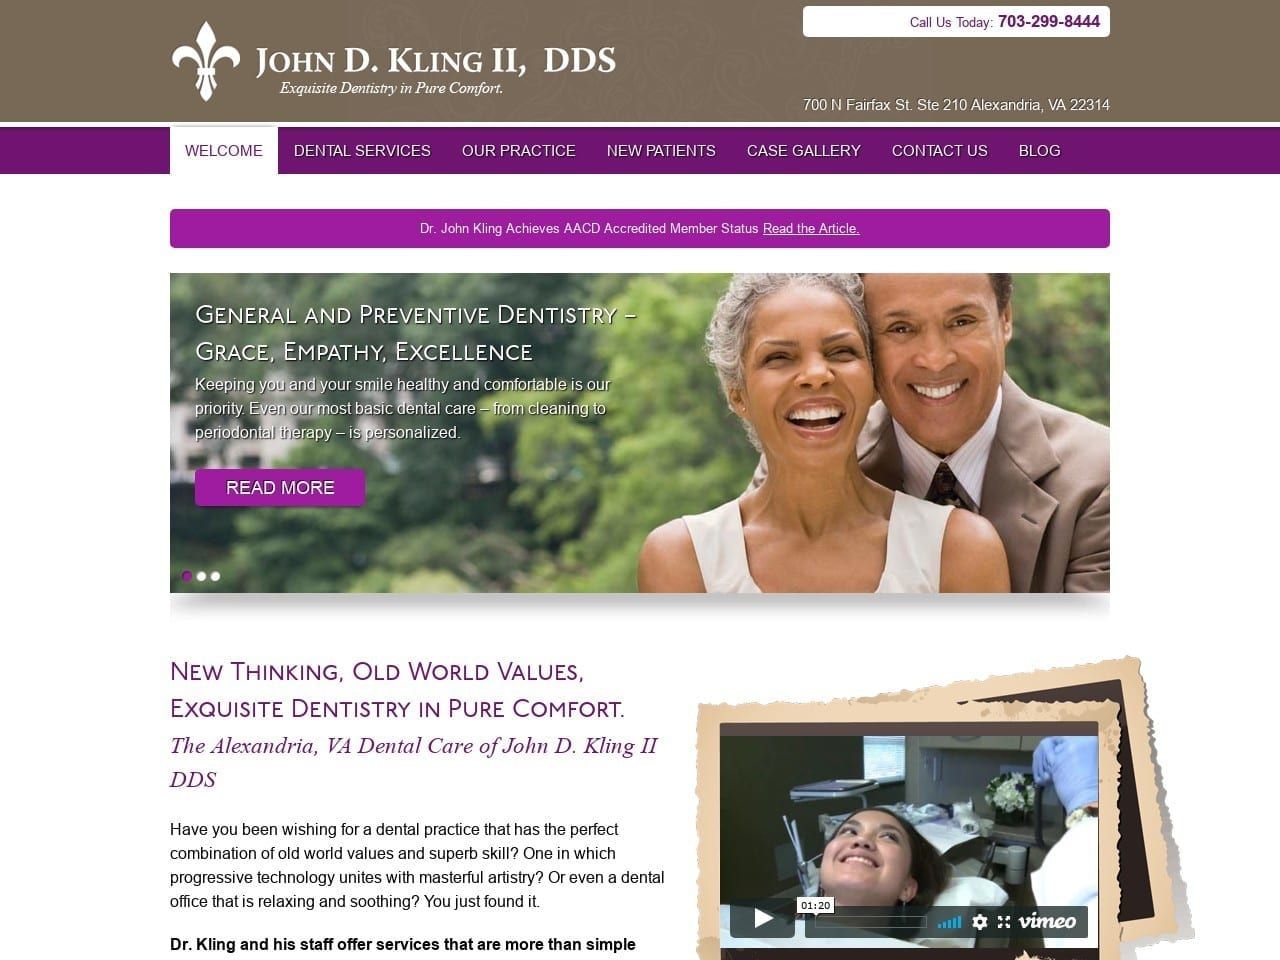 John D. Kling II DDS MAGD Website Screenshot from drjohnkling.com